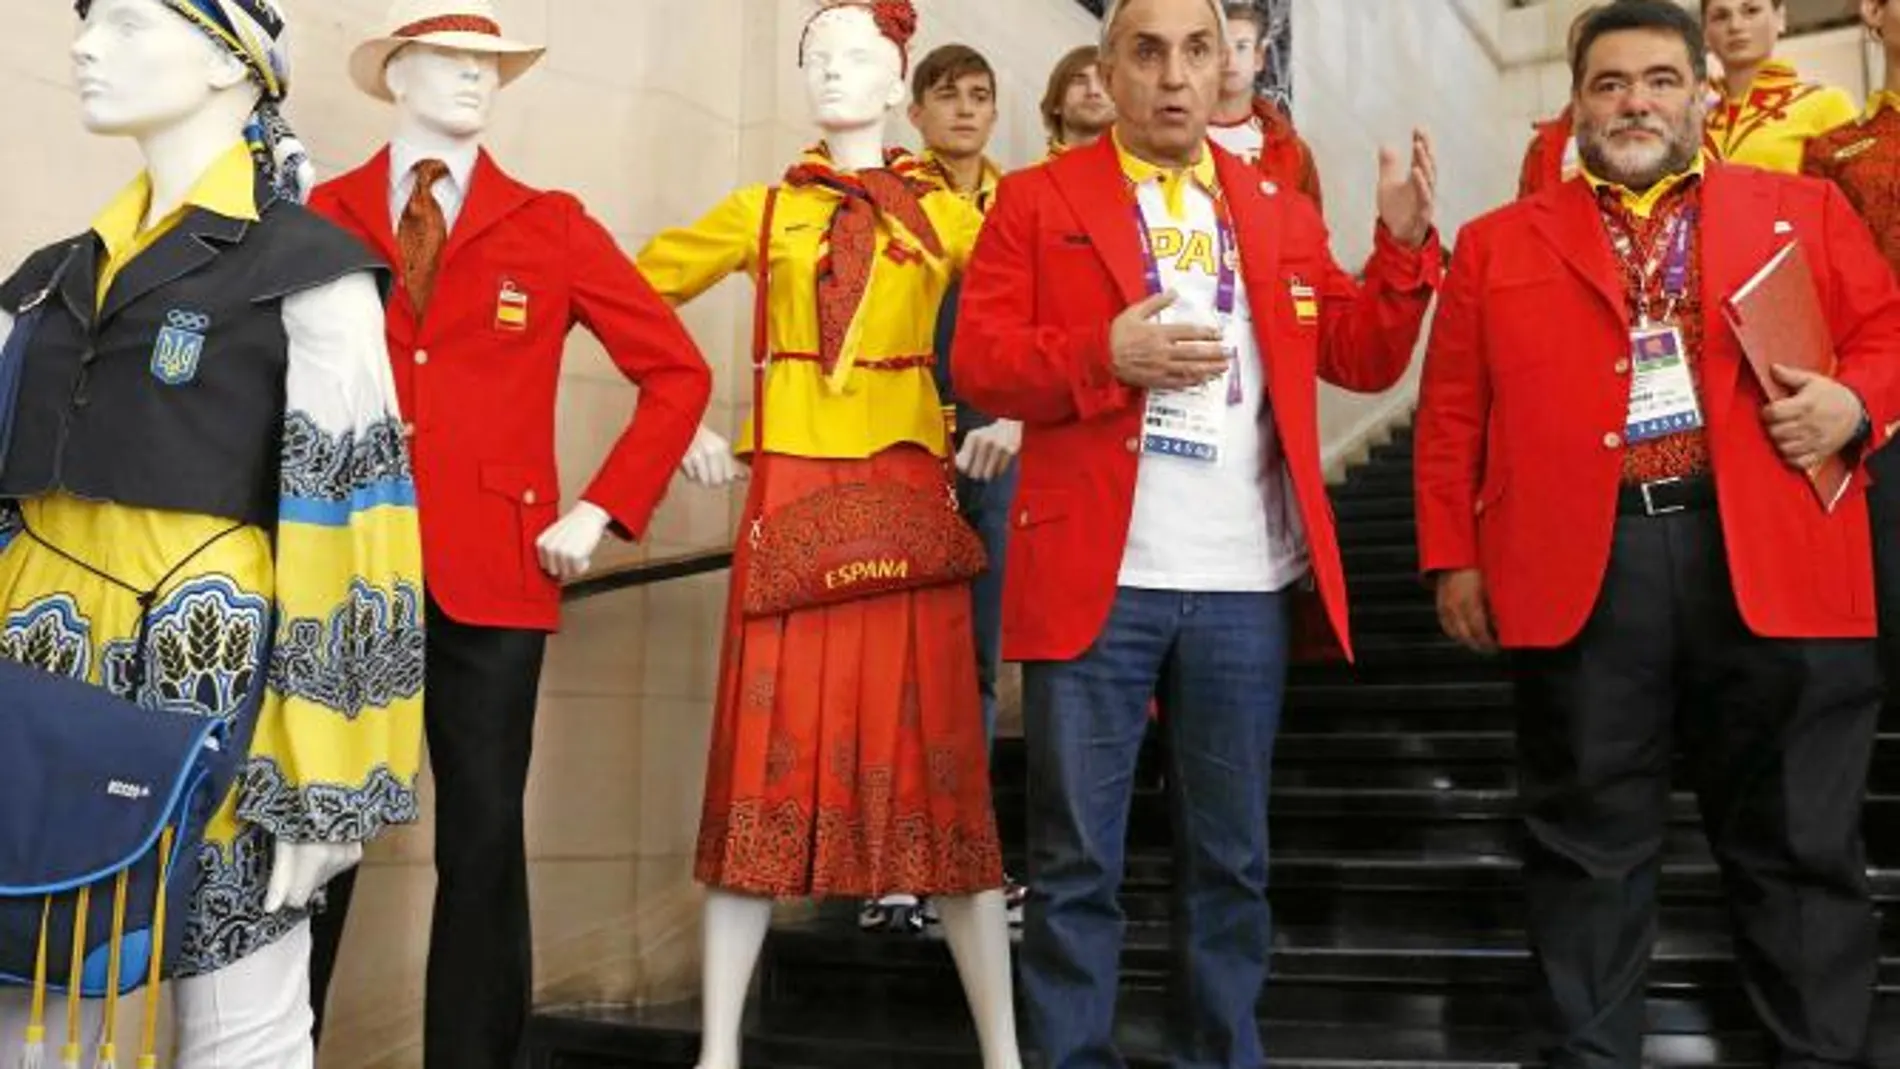 Modelos El presidente del COE, Alejandro Blanco, y el de Bosco, Mikhail Kusnirovich, posan delante de los maniquíes con el uniforme español